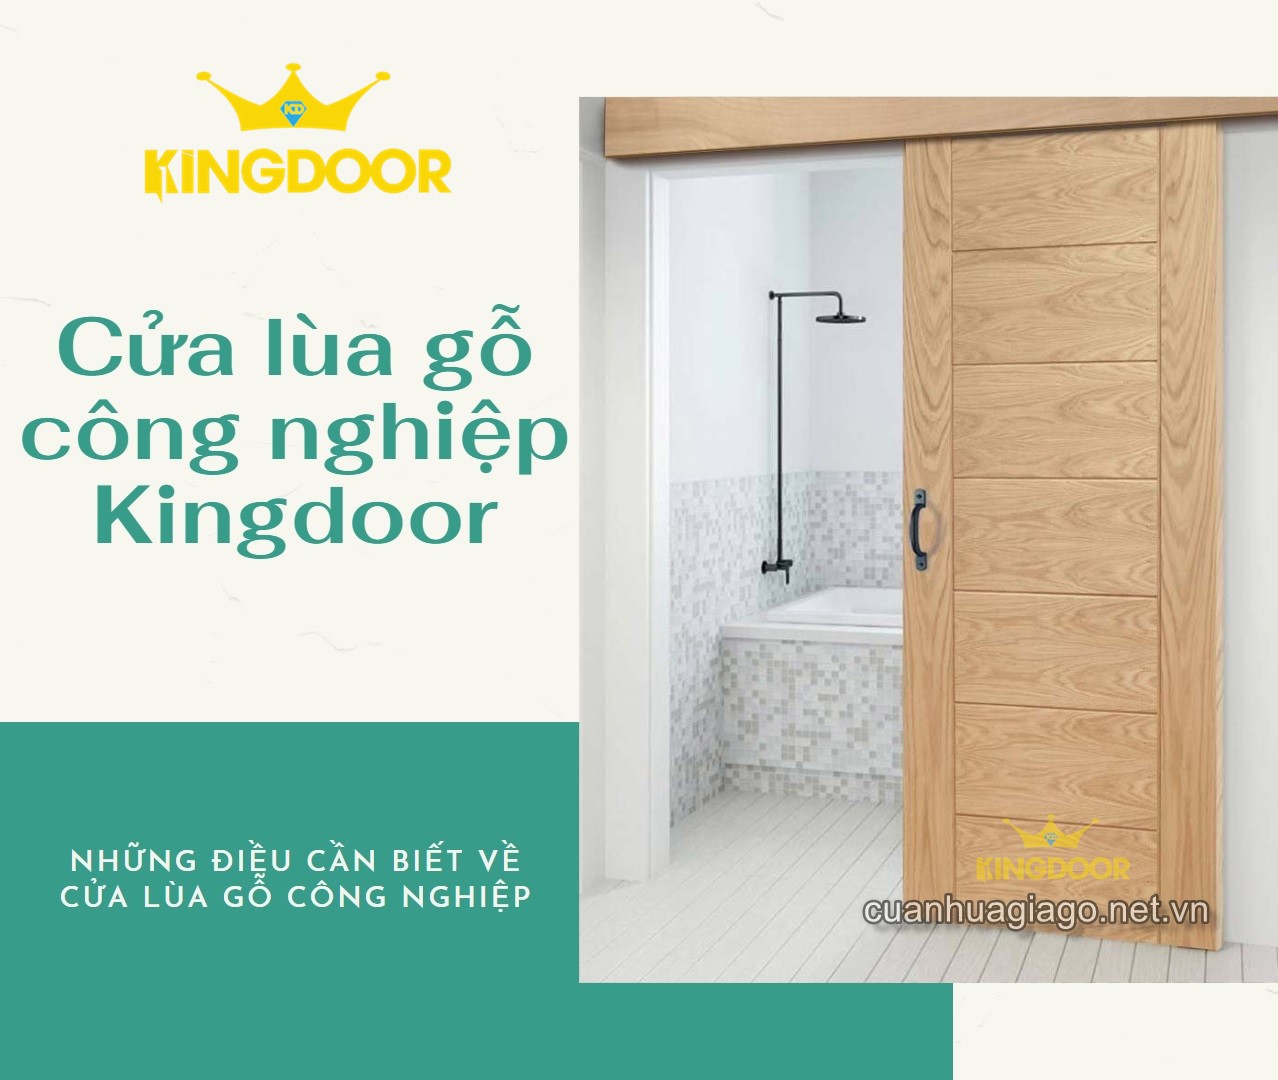 cua-lua-kingdoor